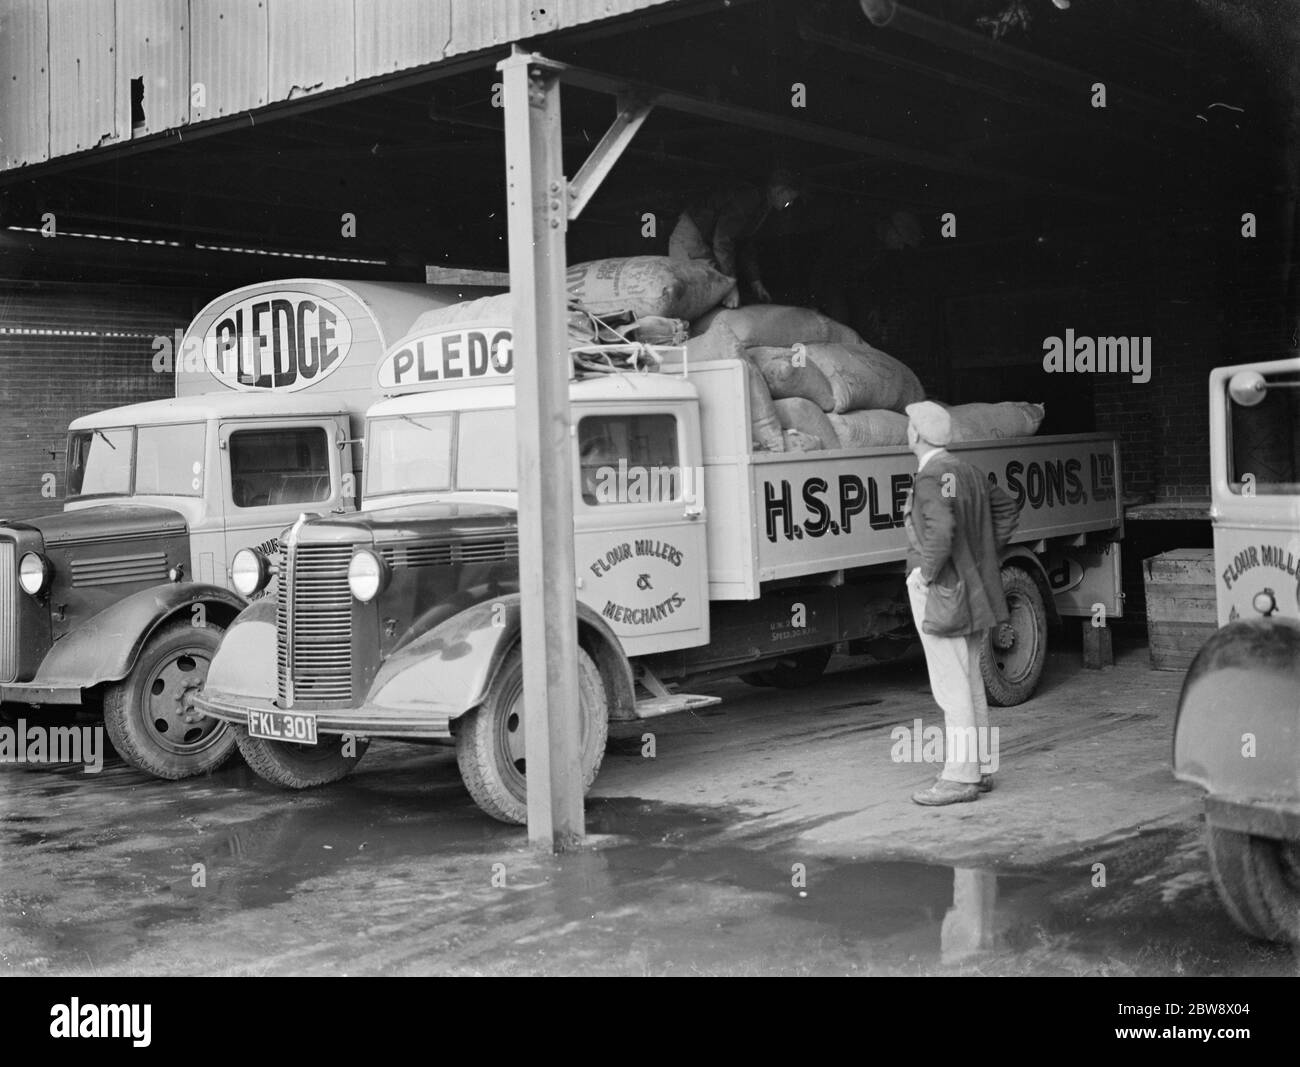 Des camions Bedford appartenant à la société de broyage nantie & son Ltd sont chargés dans leurs usines de Victoria, situées à Ashford, dans le Kent . 1939 Banque D'Images